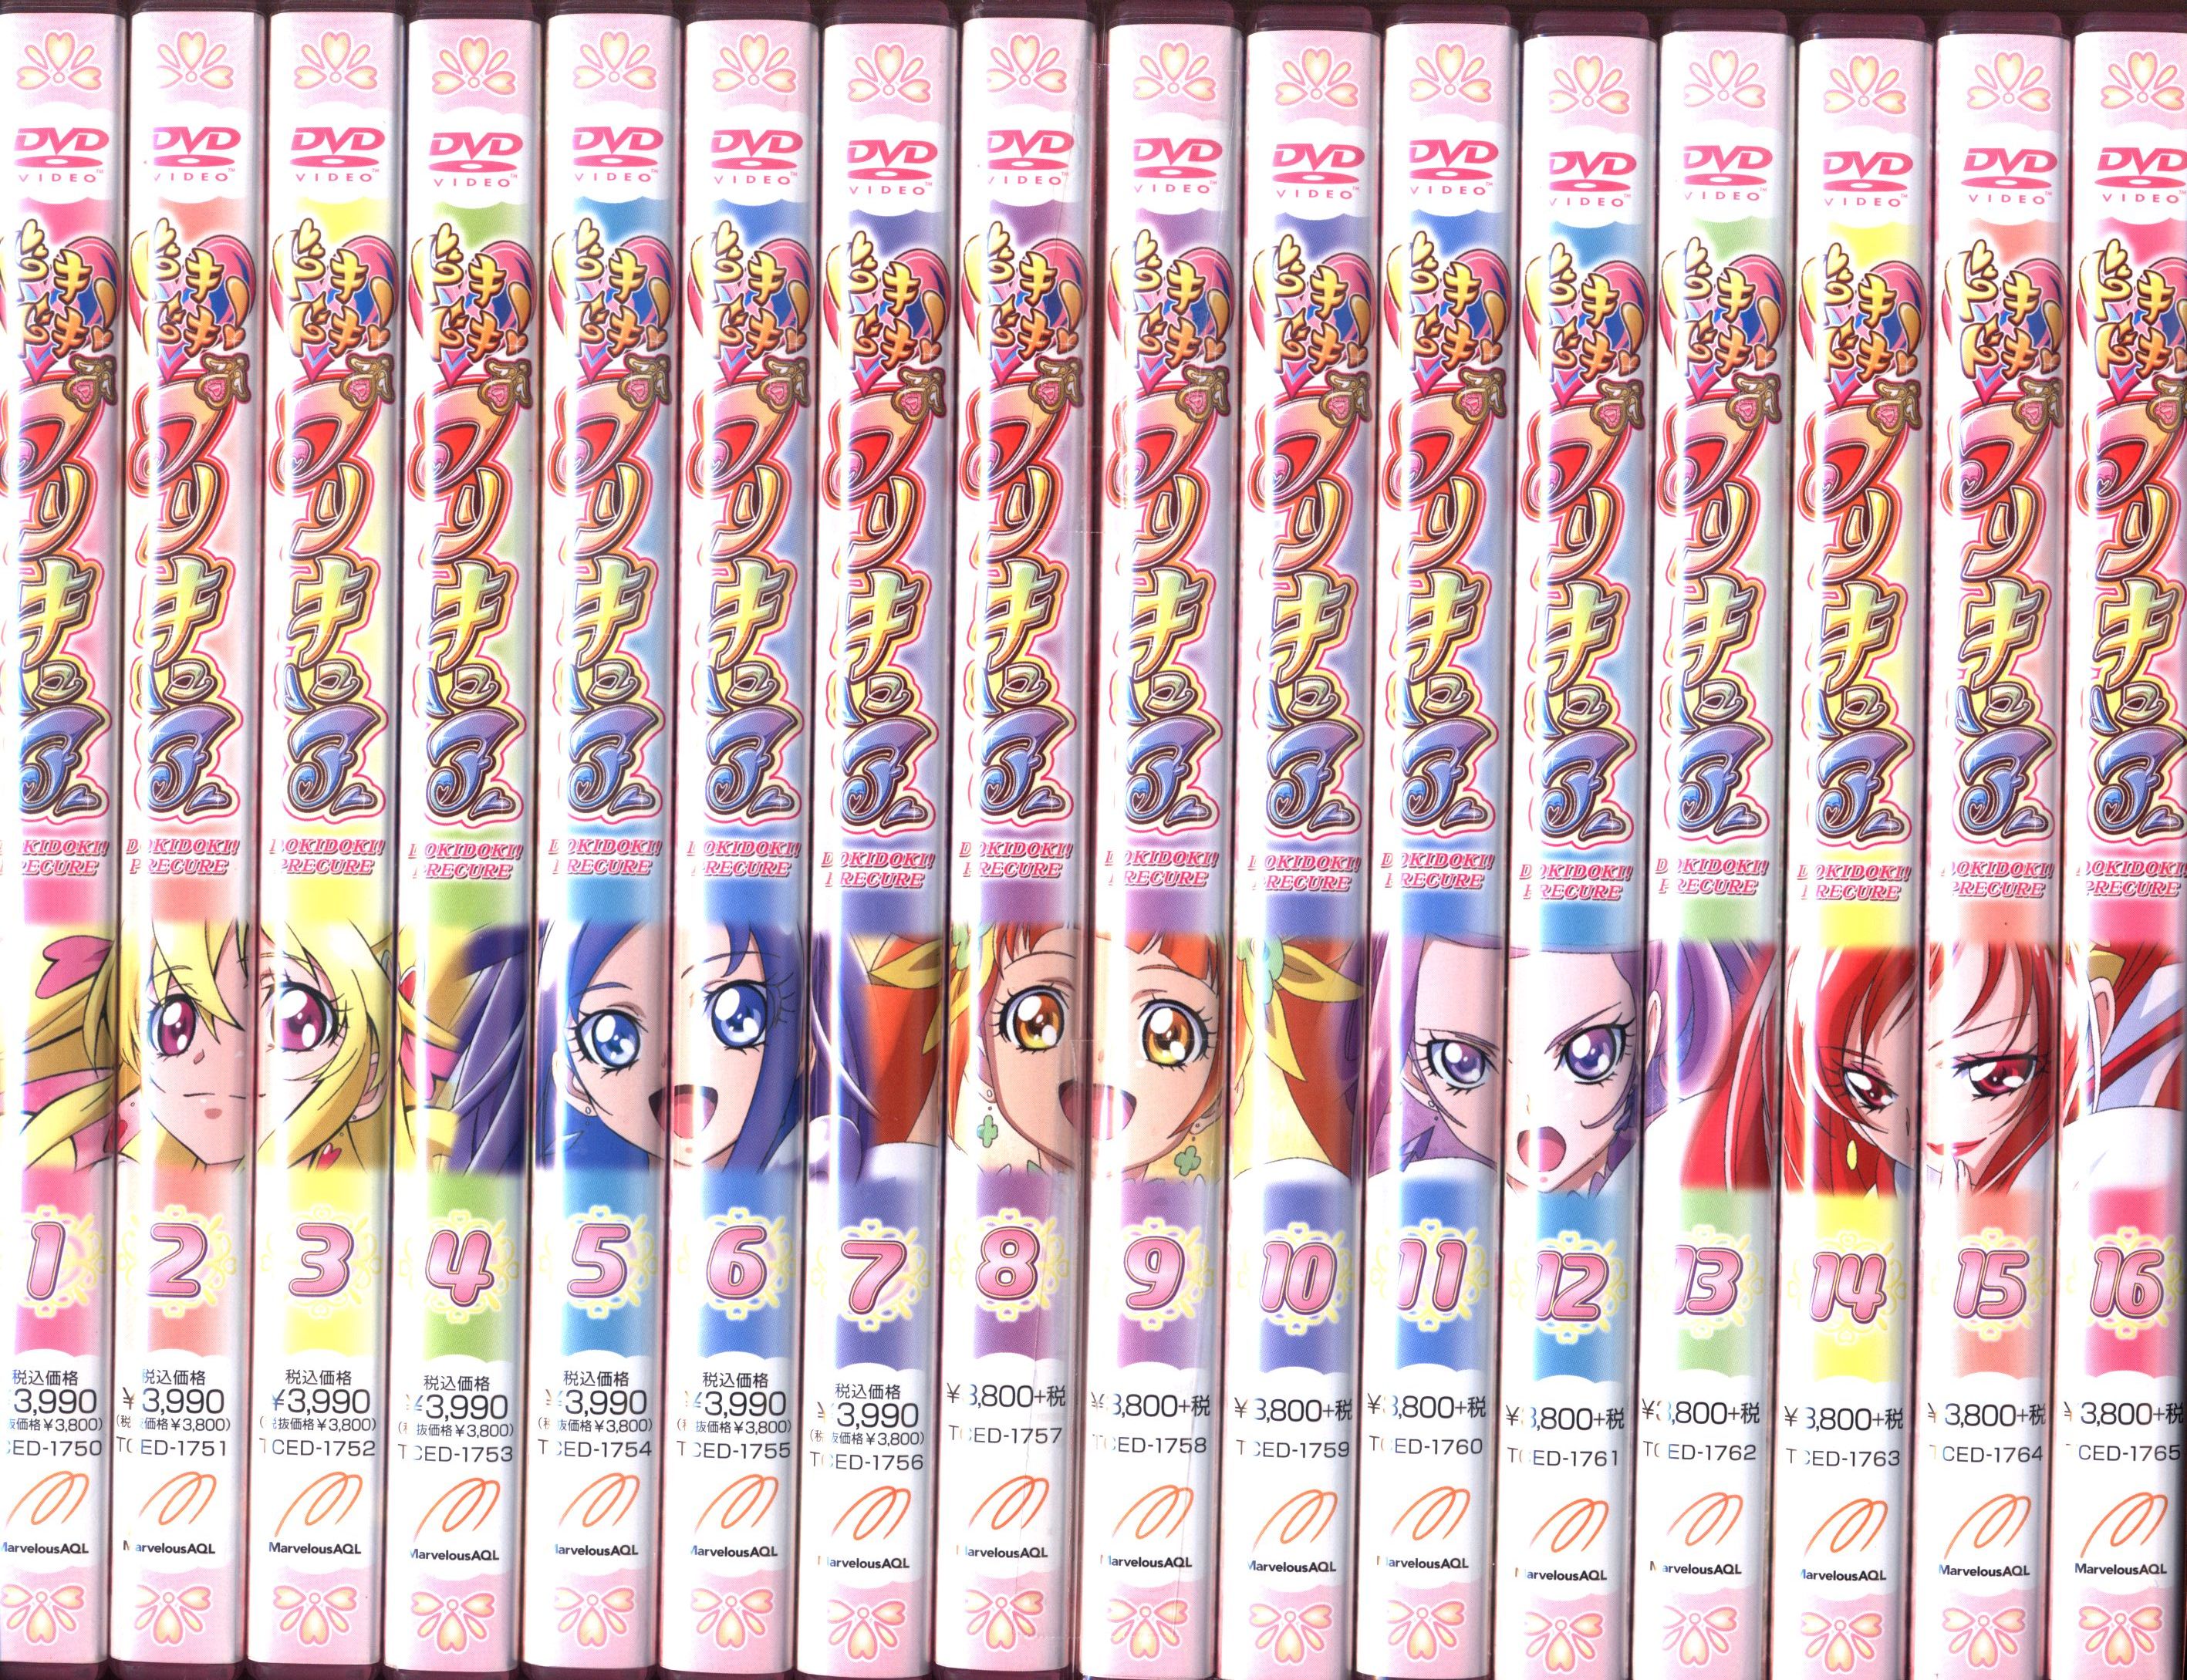 ドキドキプリキュア DVD 全16巻セット(レンタル落ち)